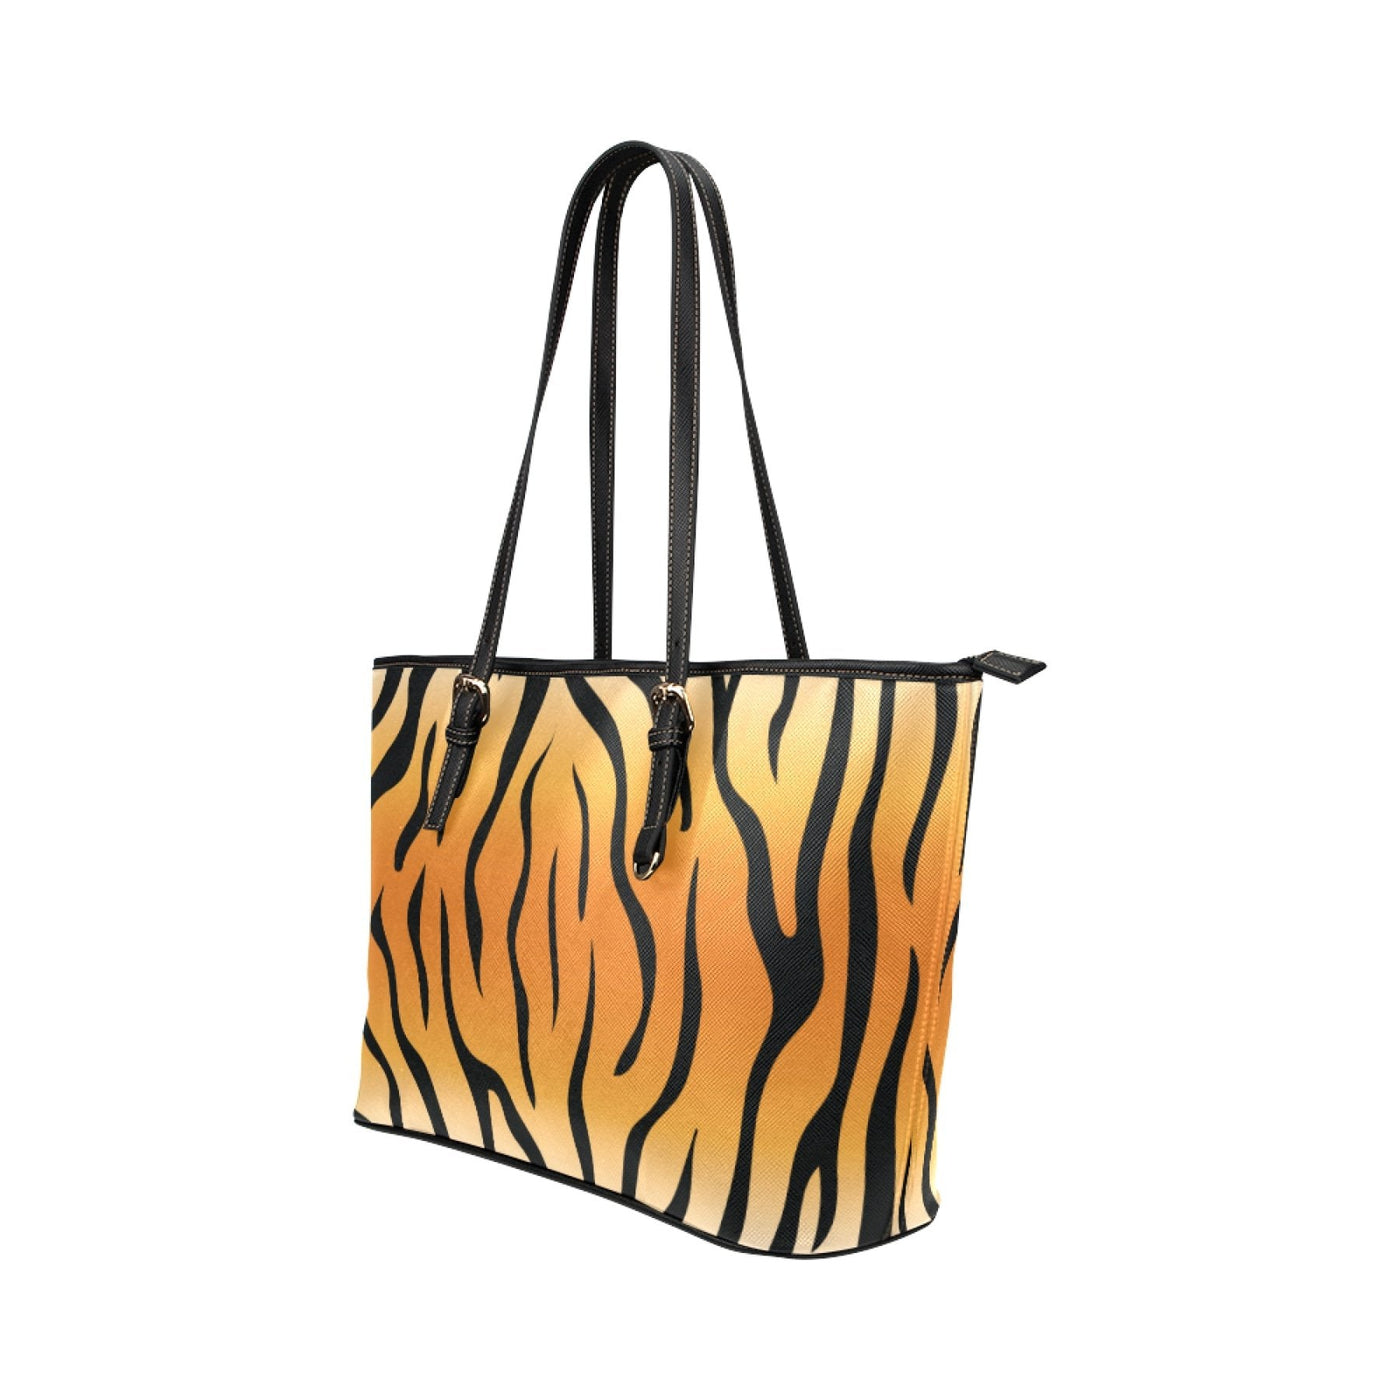 Large Leather Tote Shoulder Bag - Orange And Black Vertical Tiger Stripe - Bags